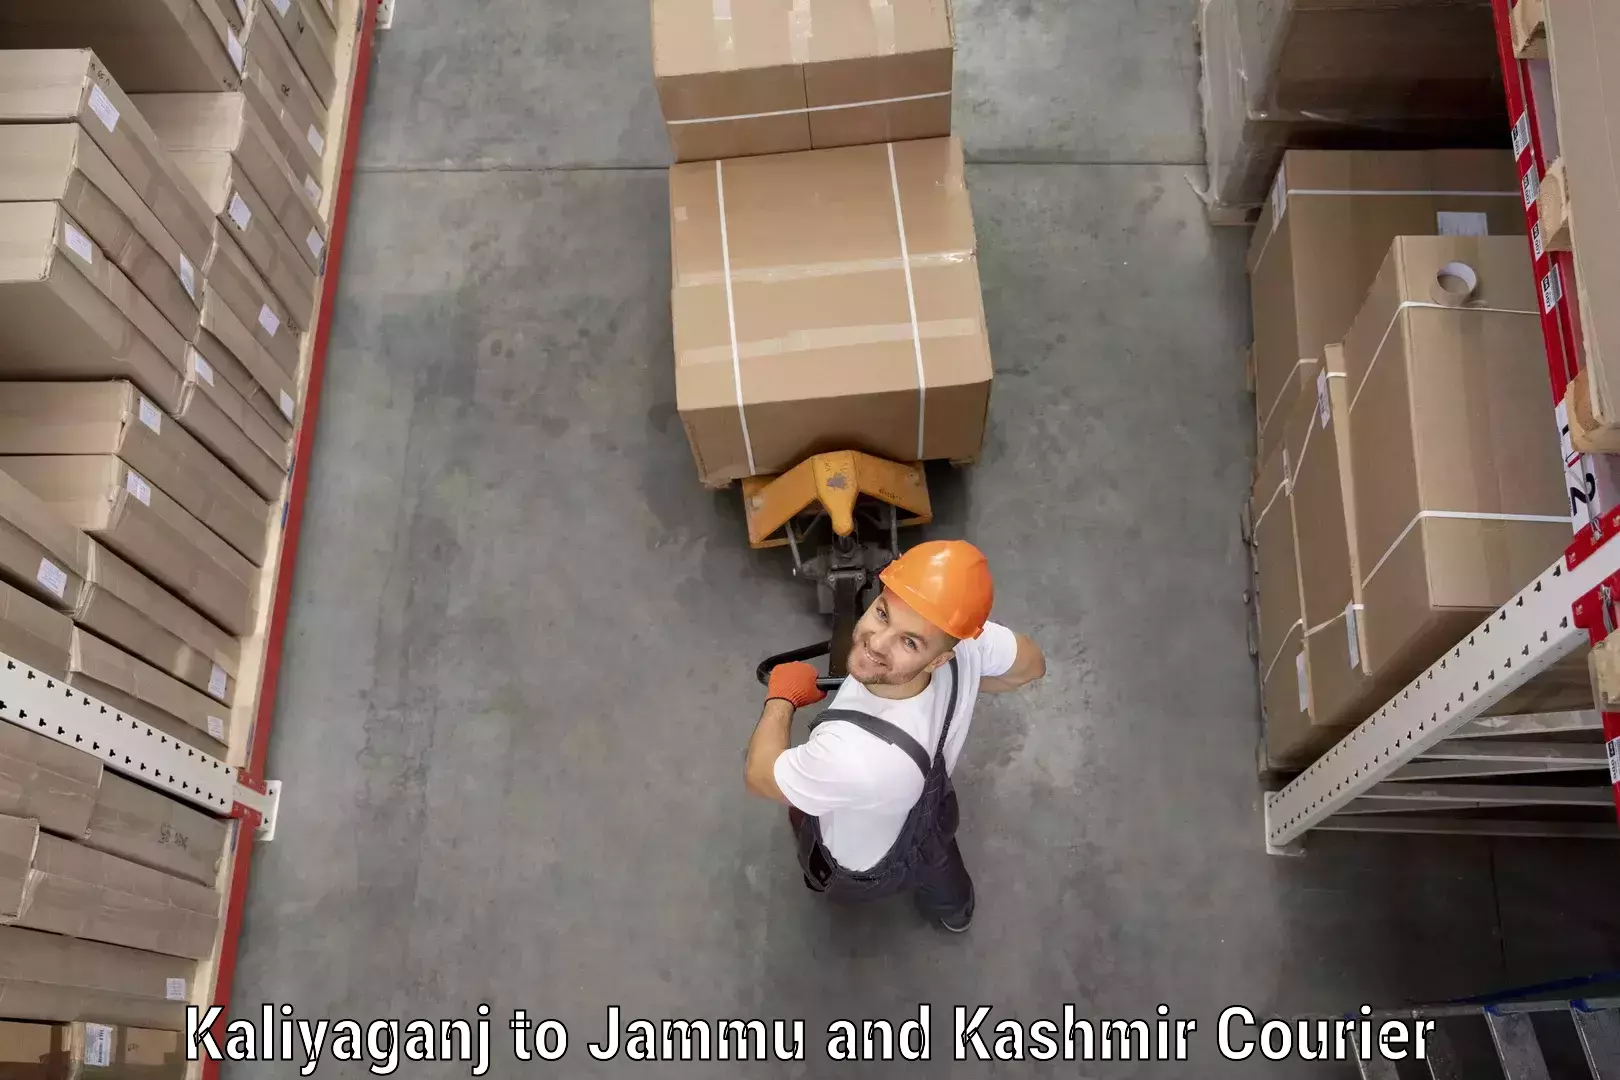 Professional courier handling Kaliyaganj to Udhampur